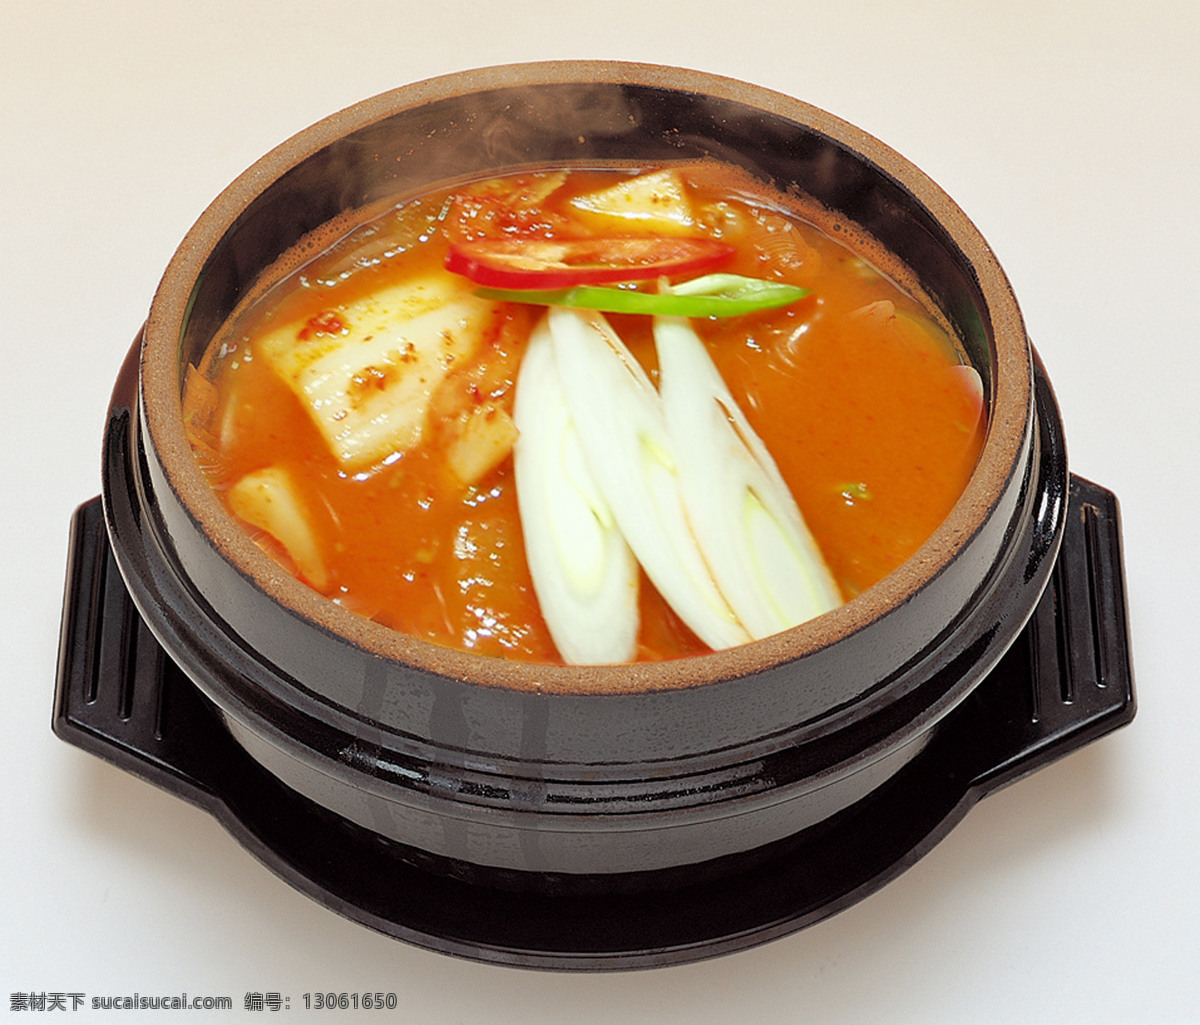 金枪鱼泡菜汤 泡菜汤 石锅酱汤 朝鲜族风味 韩国料理 餐饮美食 传统美食 菜谱 菜品图片